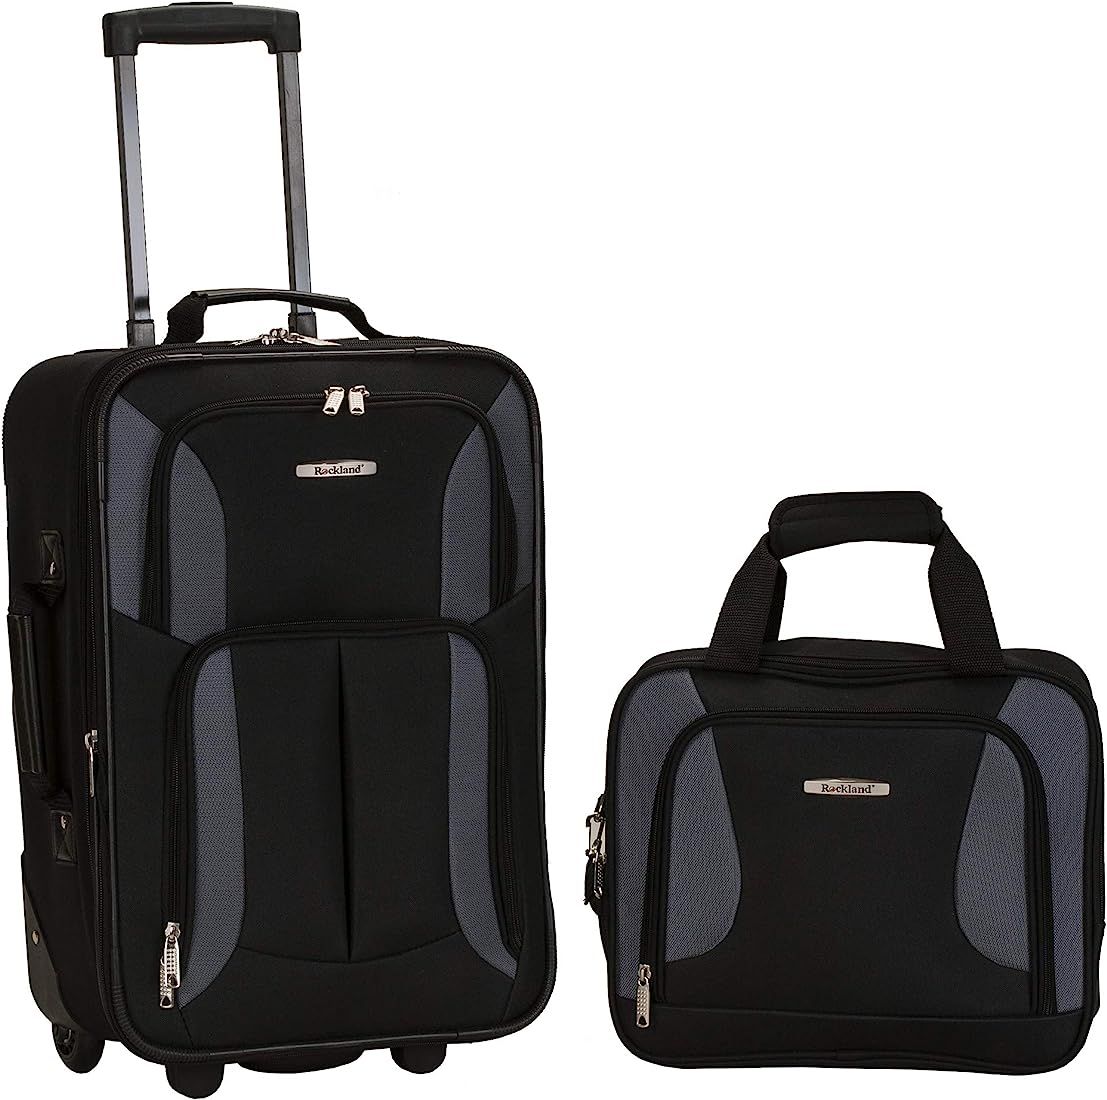 Rockland Fashion Softside Upright Luggage Set, Black, 2-Piece (14/19) | Amazon (US)